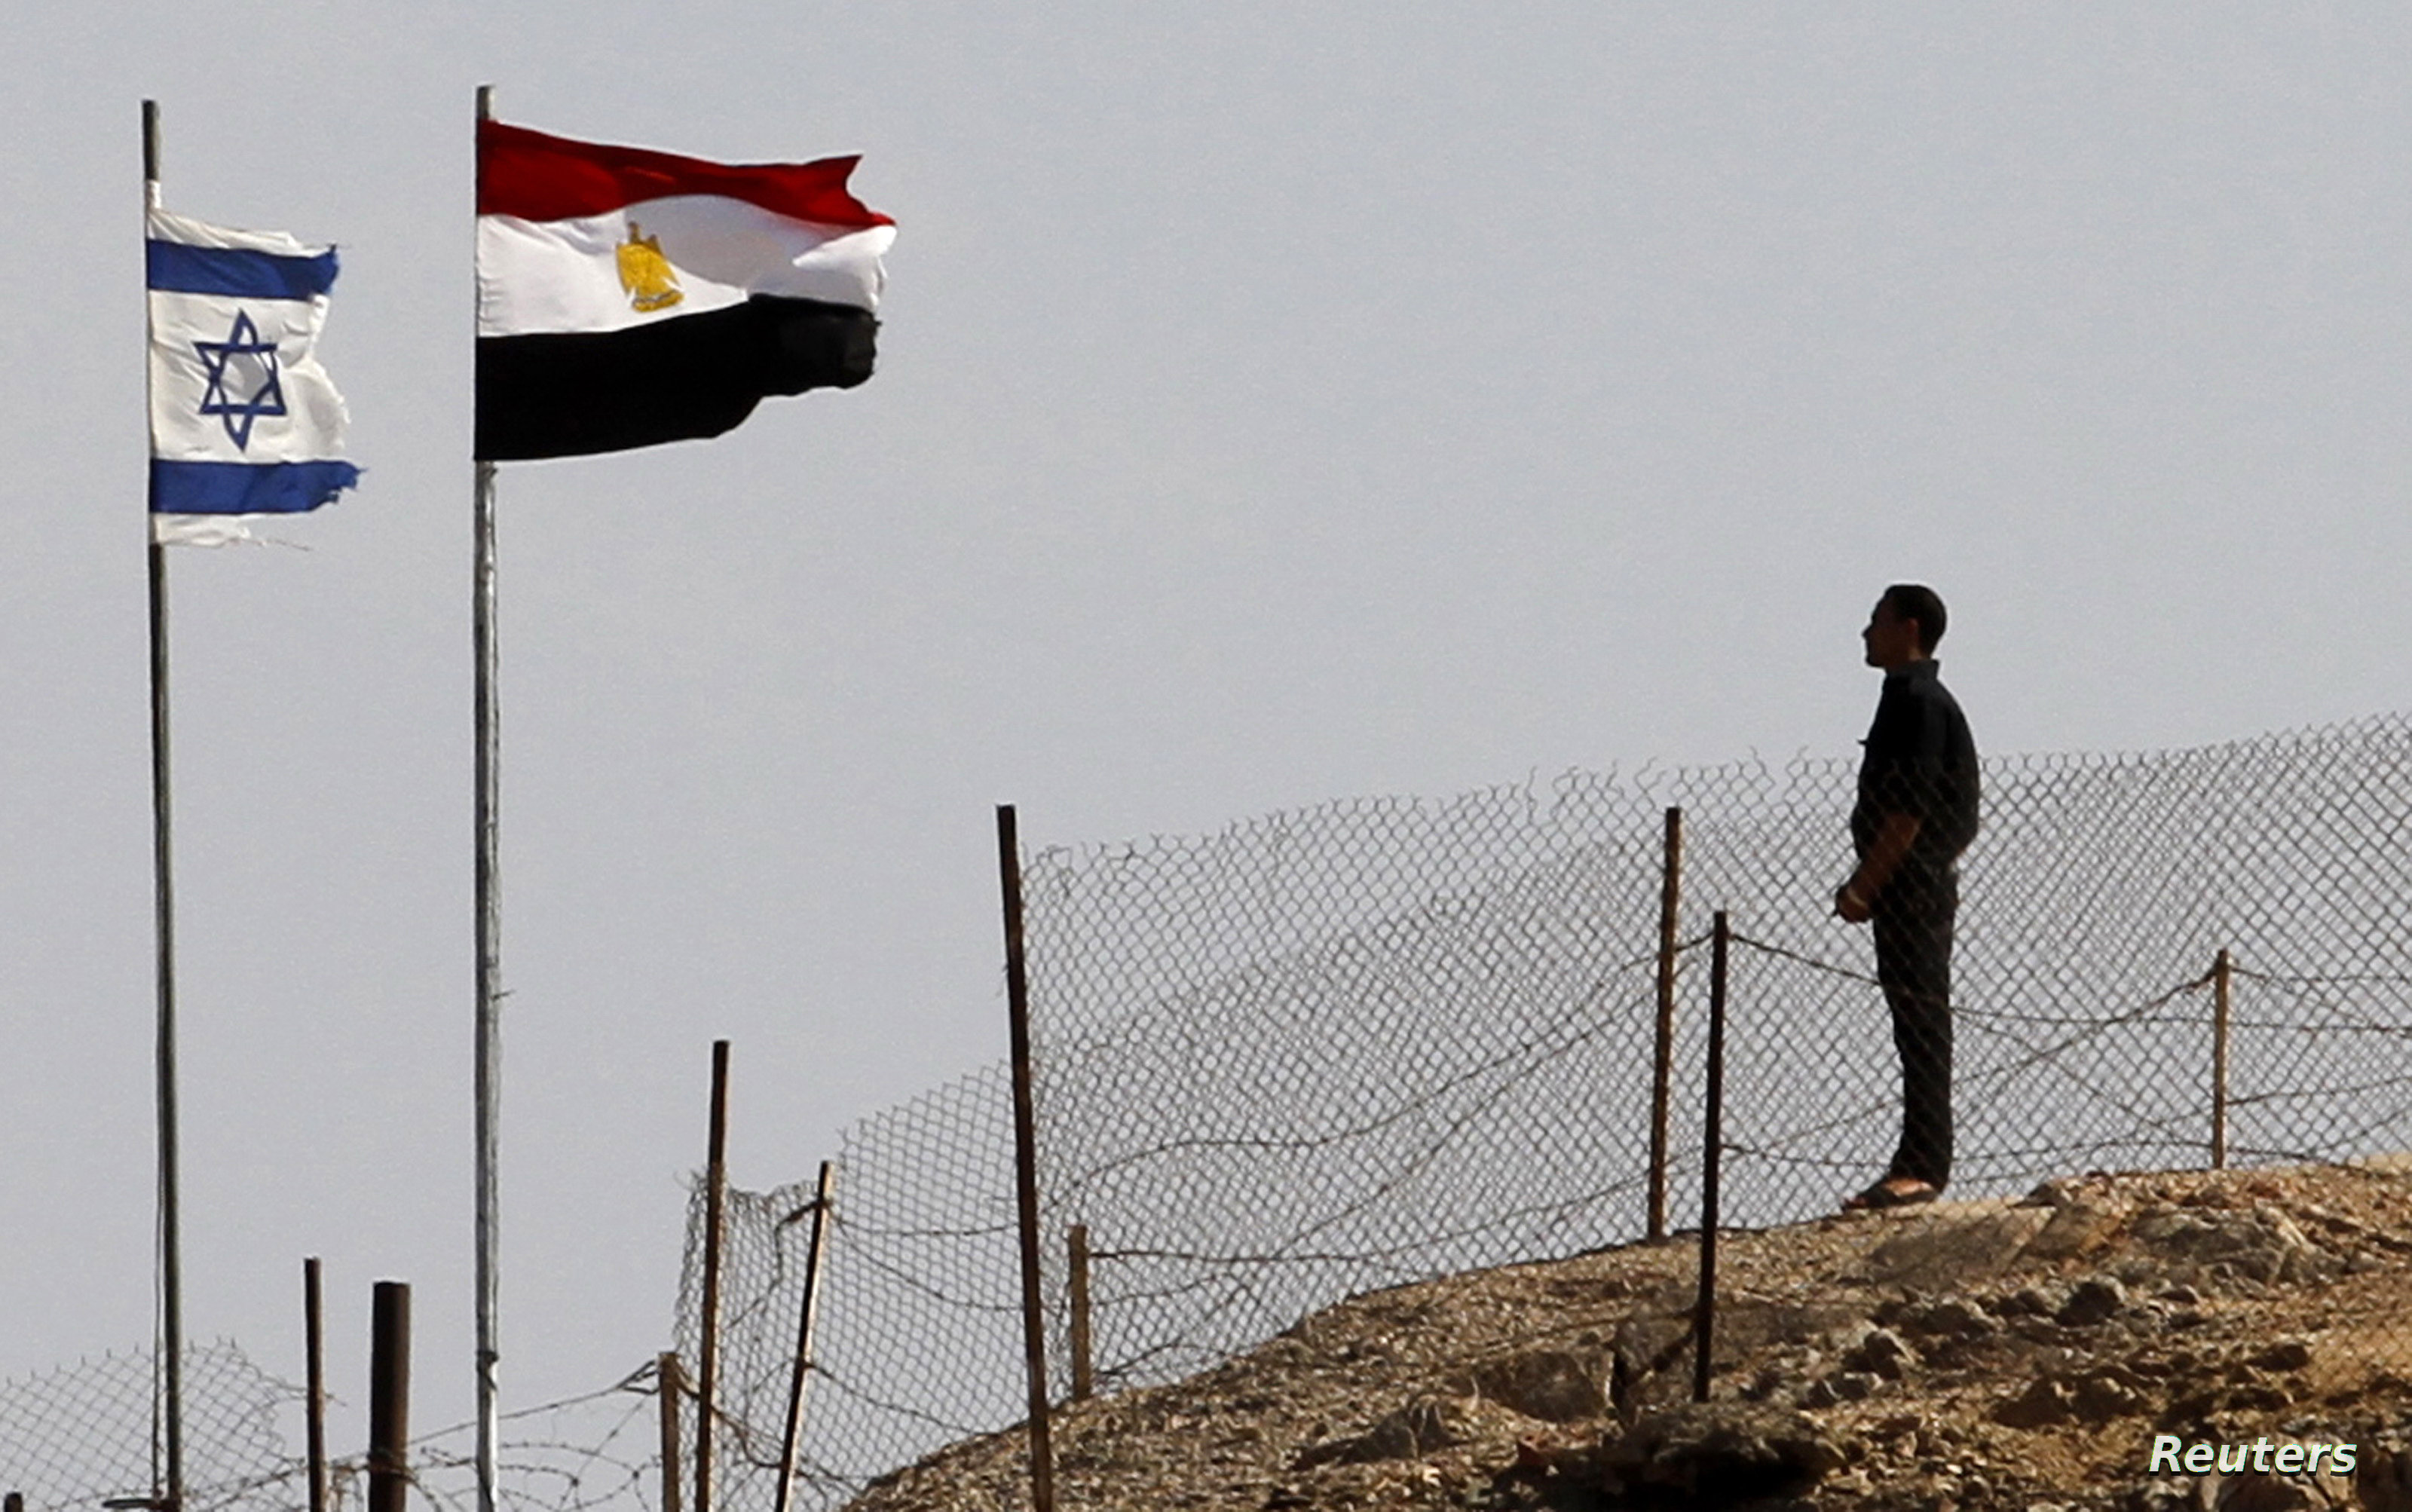 جيش الإحتلال الإسرائيلي يعترف بقصف موقع مصري و”أدرعي“ يقول إنه بالخطأ